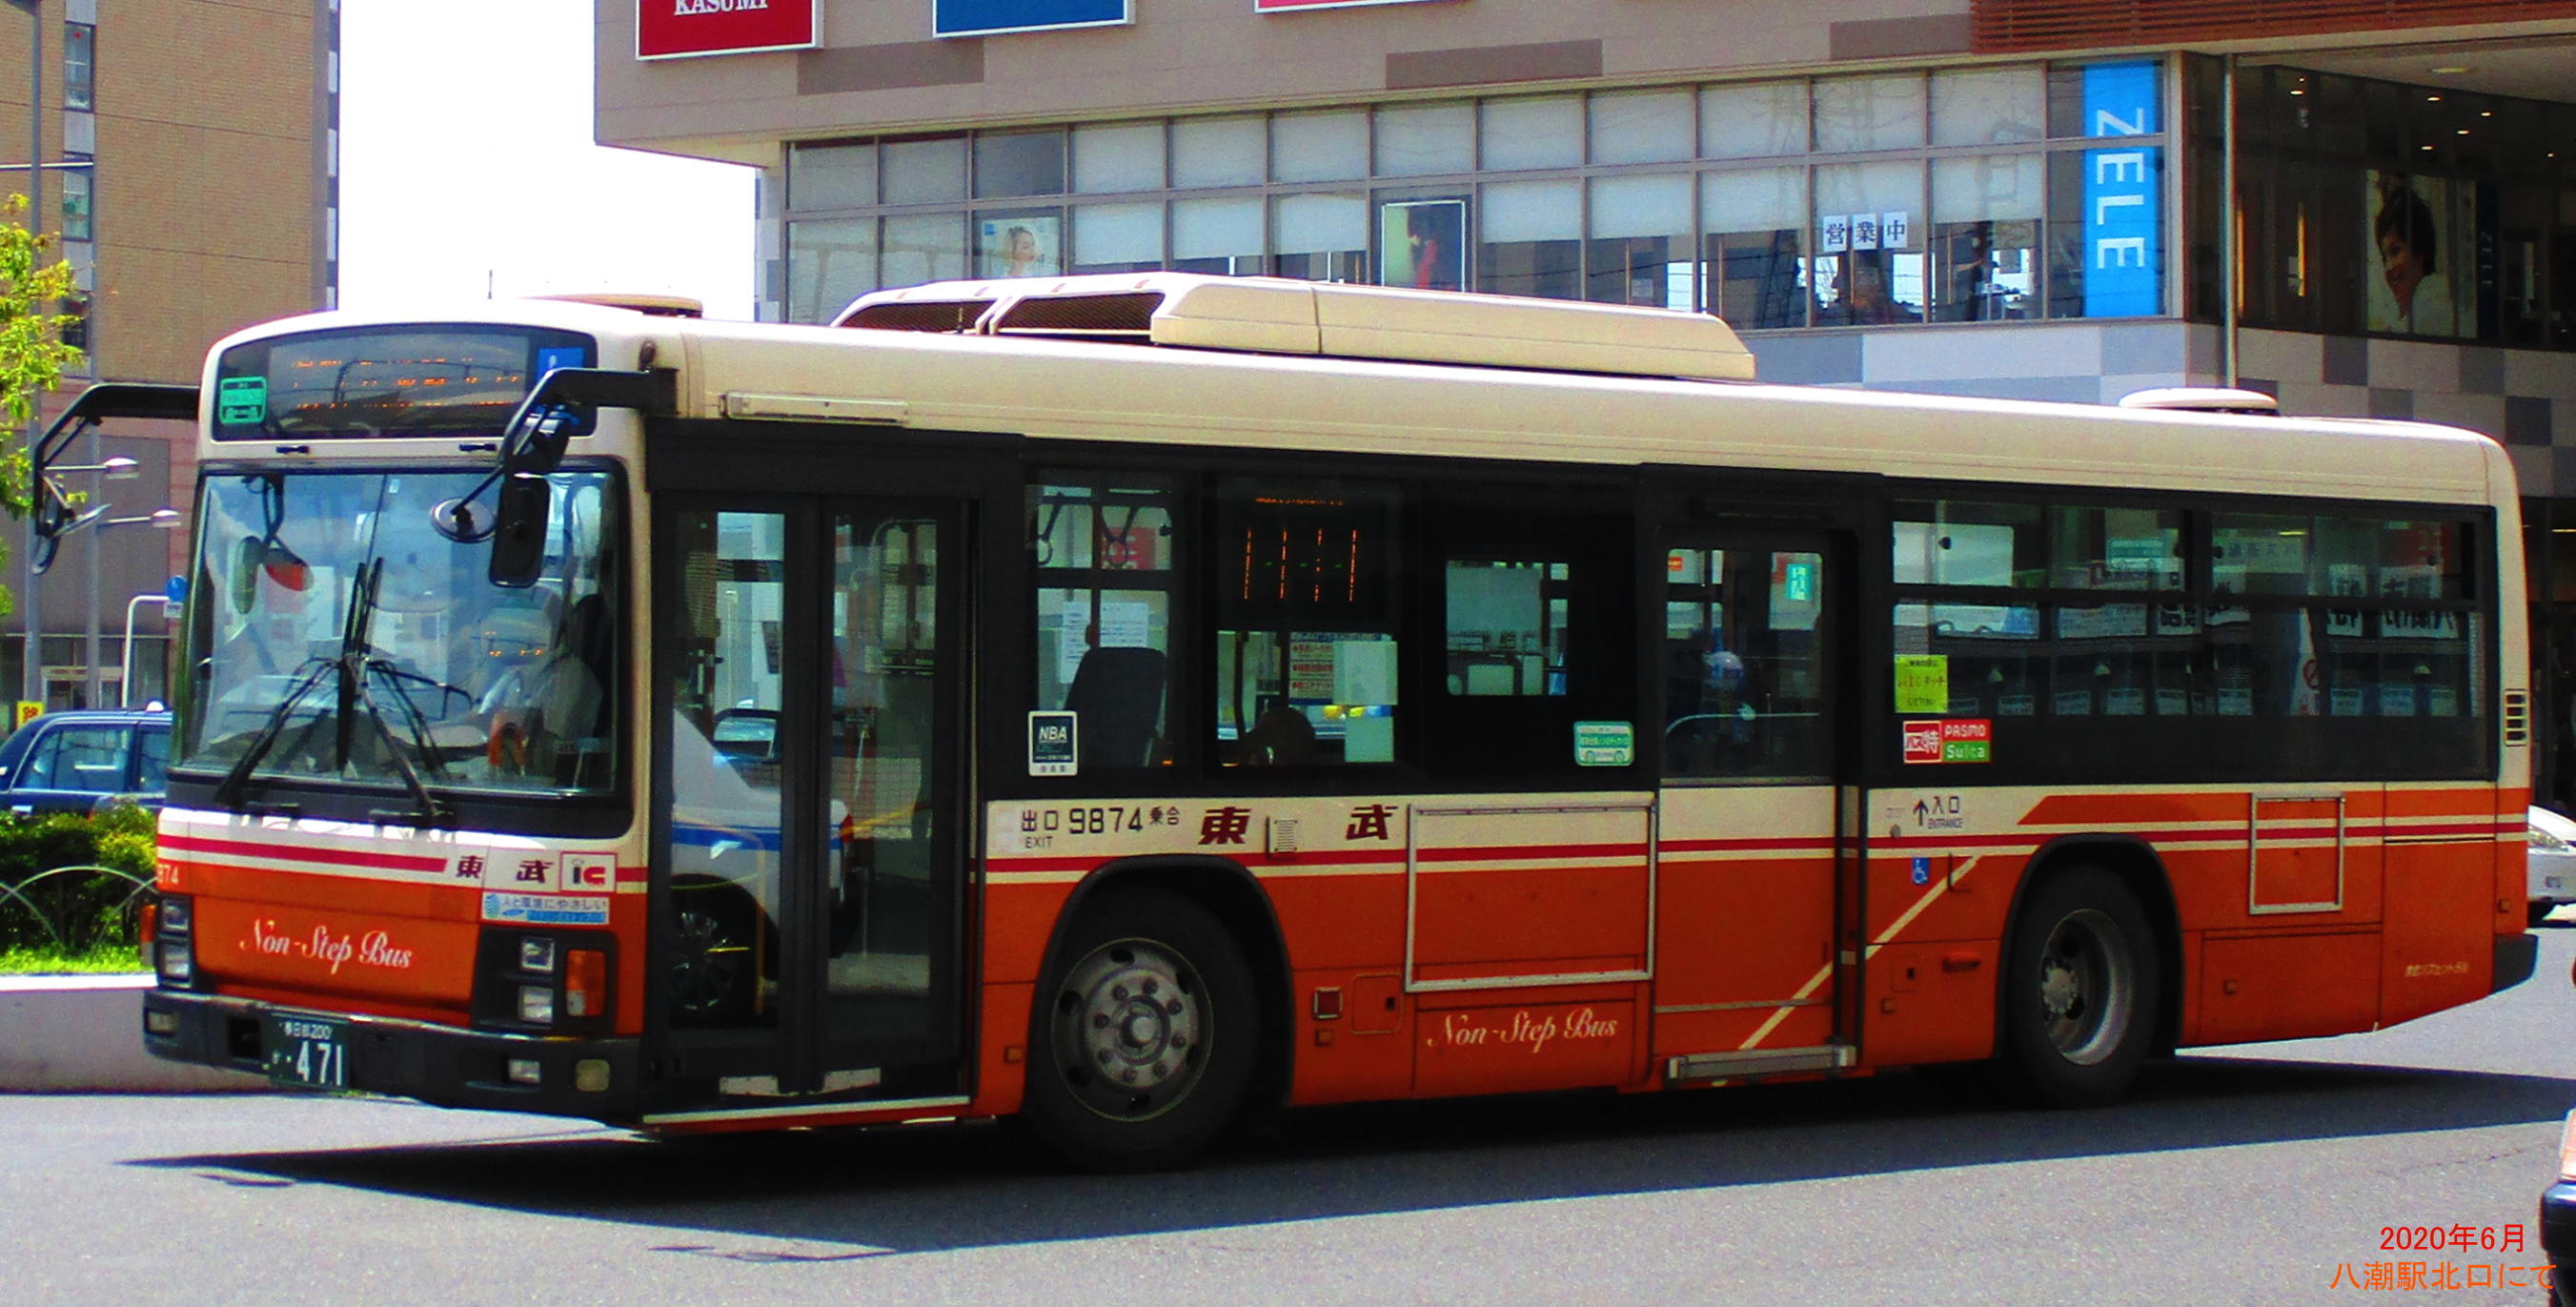 時刻 表 バス セントラル 東武